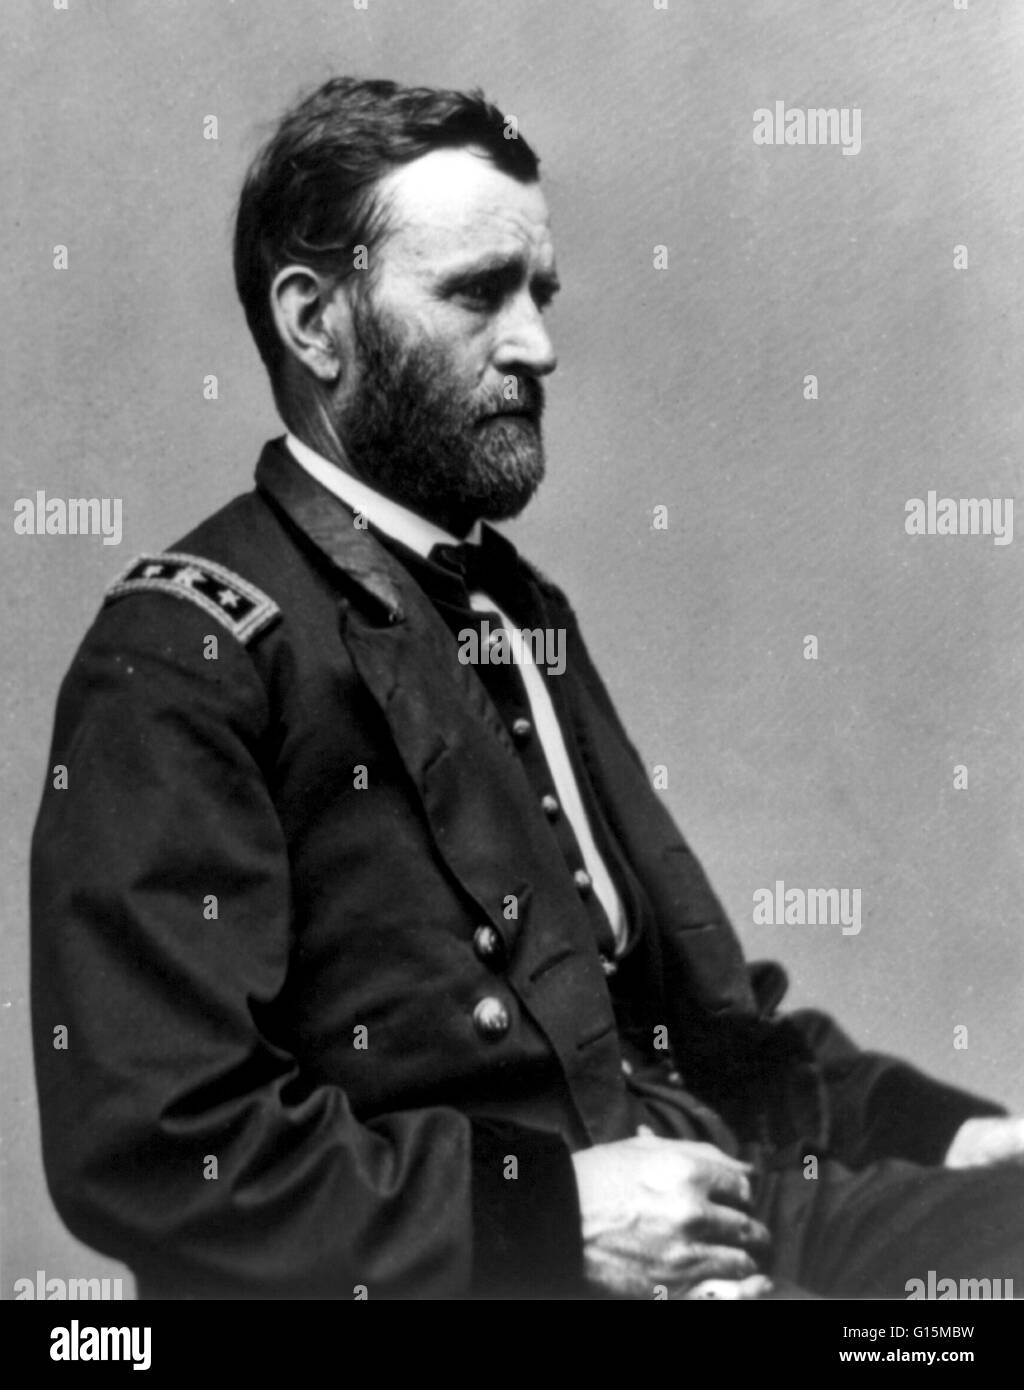 Ulysses S. Grant (geboren Hiram Ulysses Grant; 27. April 1822 - 23. Juli 1885) war der 18. Präsident der Vereinigten Staaten. Ein Berufssoldat, er studierte an der United States Military Academy in West Point und mexikanisch-amerikanischen Krieges diente. Unter Gra Stockfoto